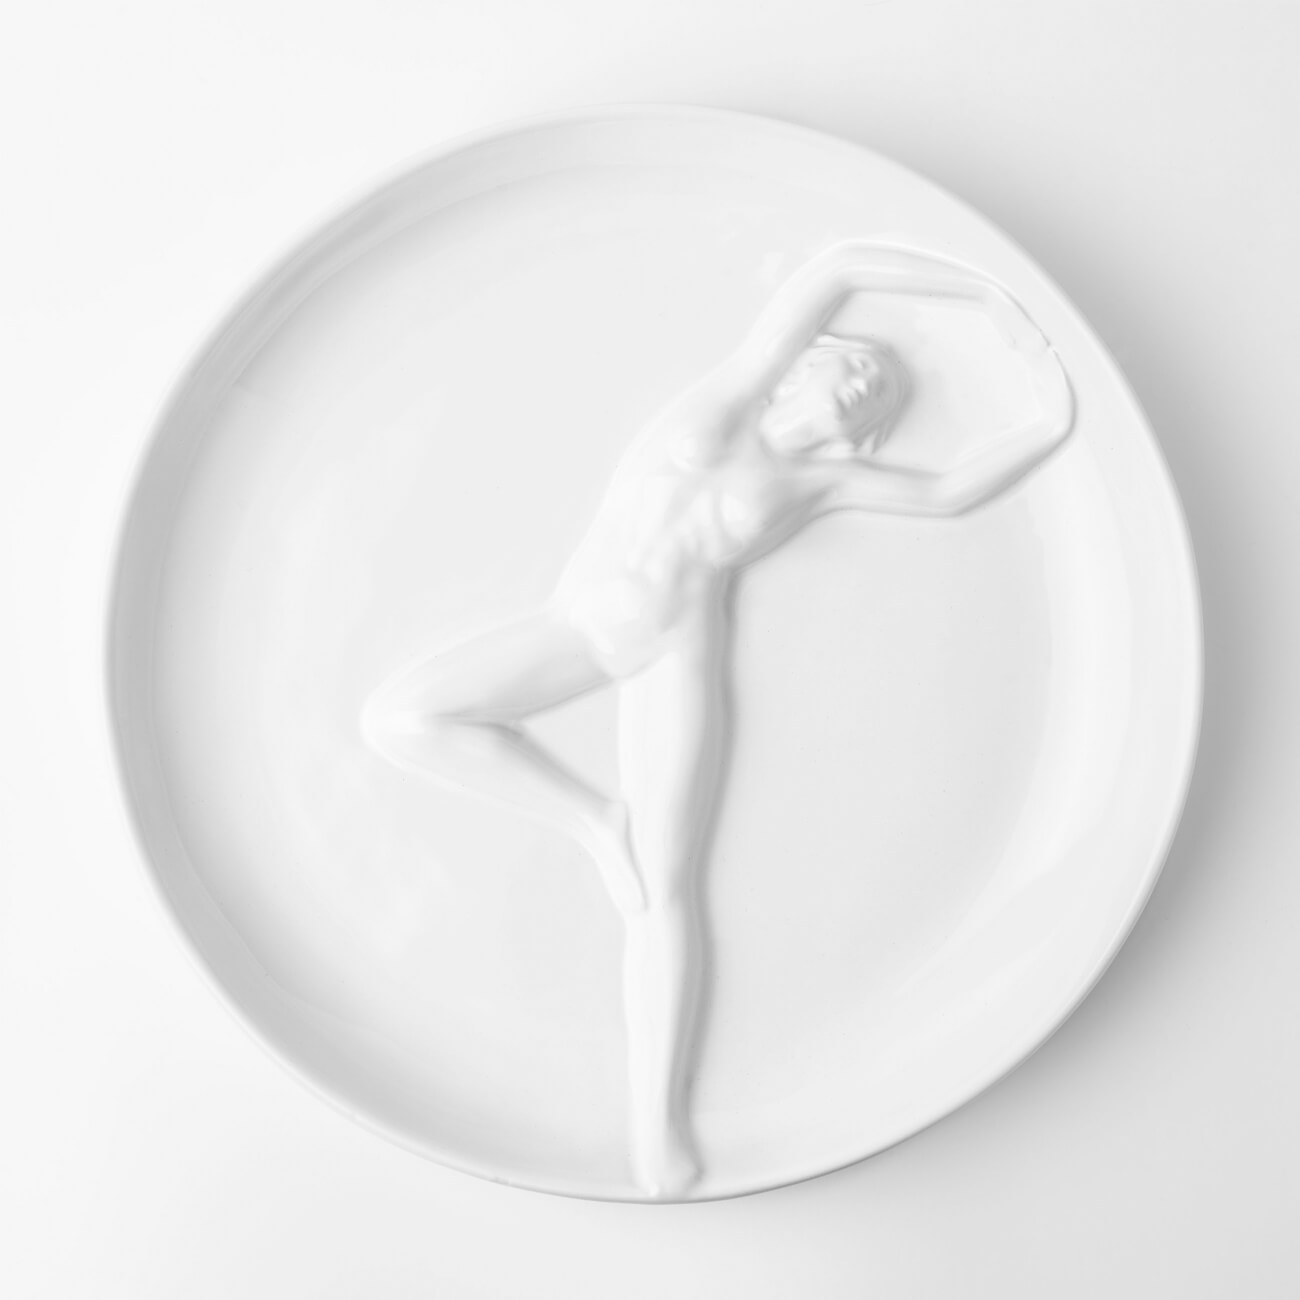 Блюдо, 24 см, керамика, белое, Женщина, Face блюдо 29 см керамика белое лица face